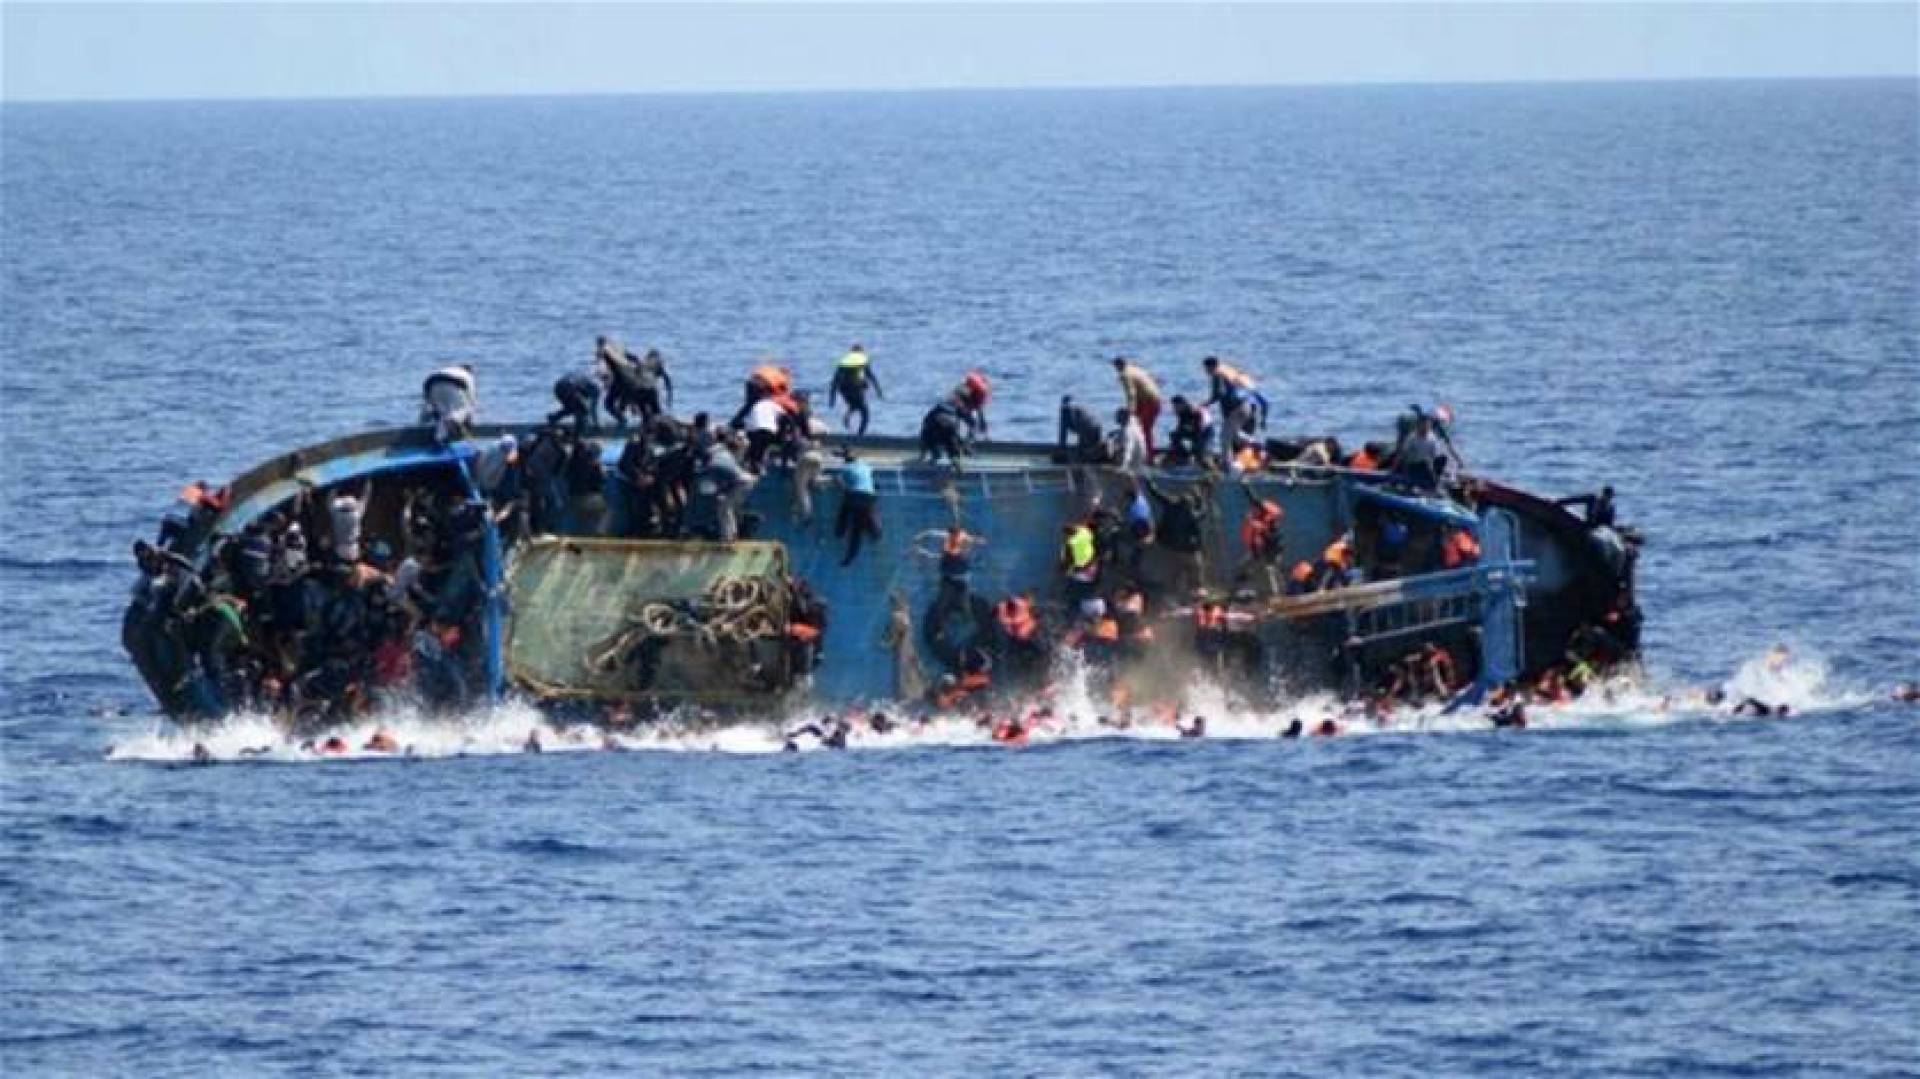   مقتل 4 مهاجرين في انقلاب مركب قبالة سواحل إسبانيا